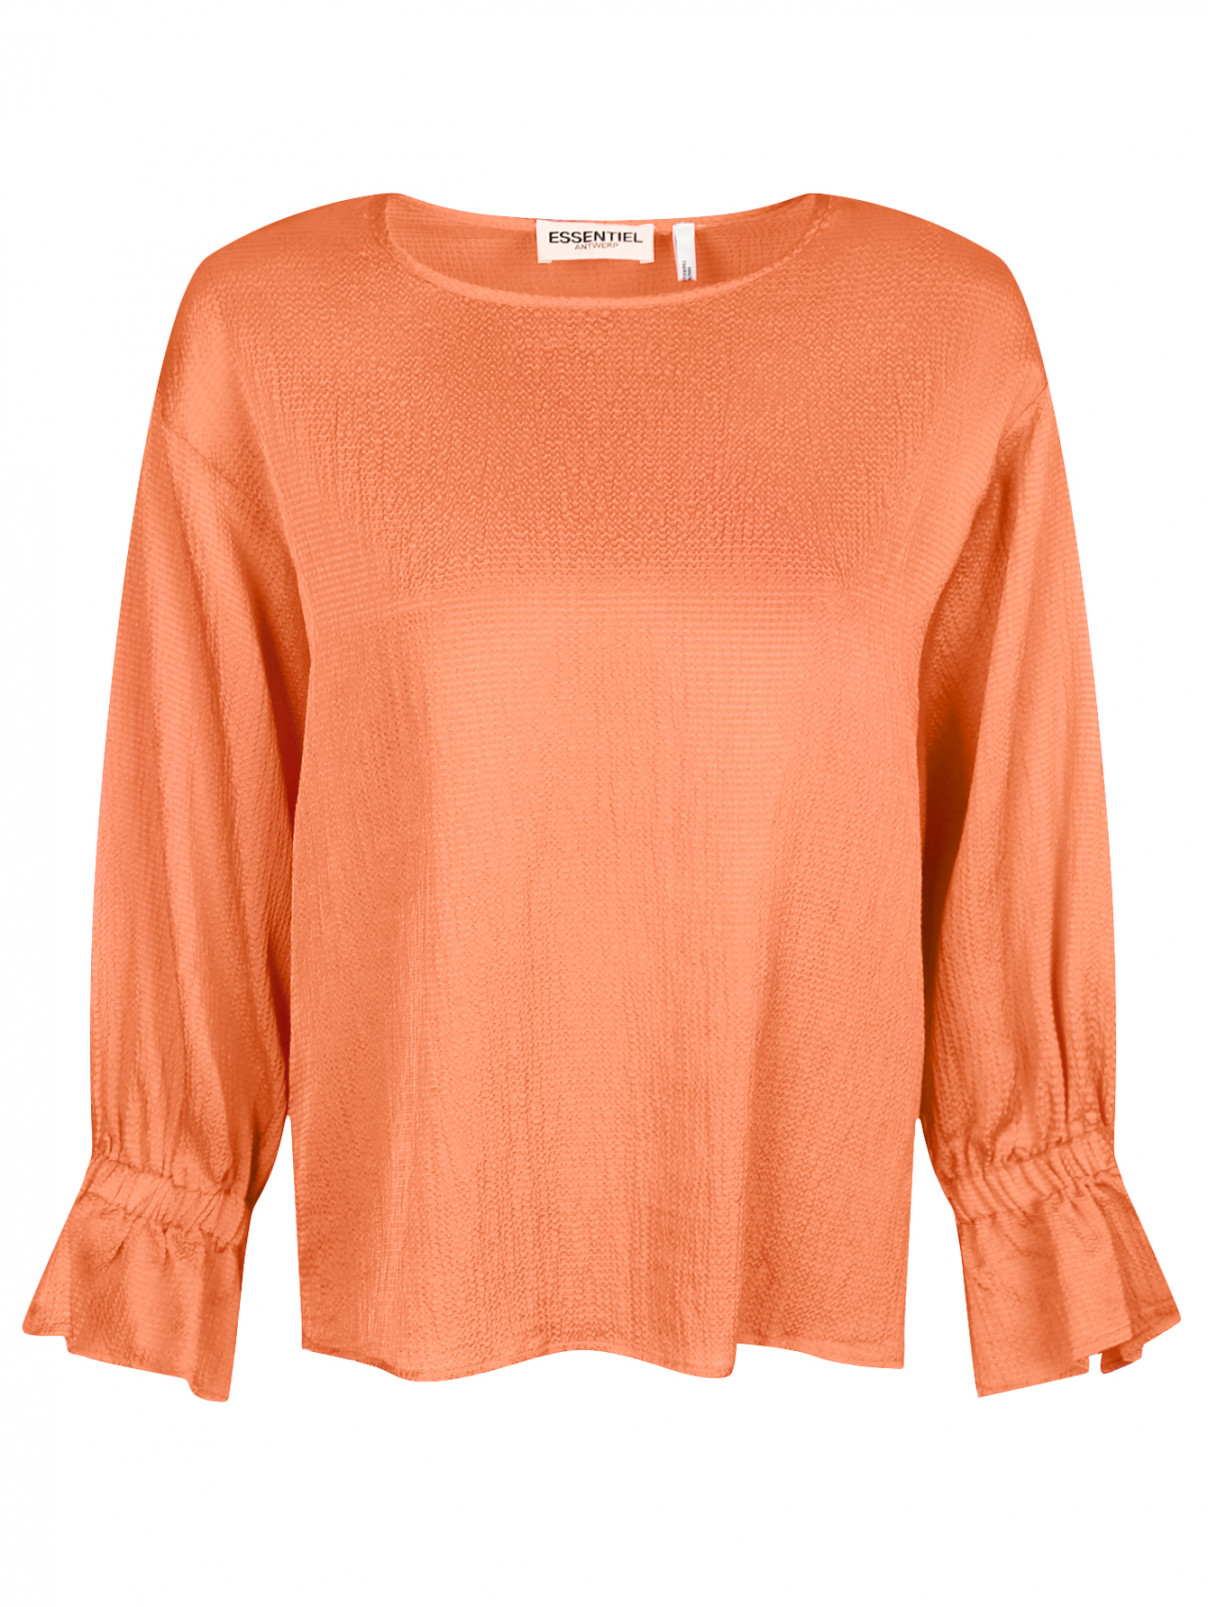 Блуза свободного кроя Essentiel Antwerp  –  Общий вид  – Цвет:  Оранжевый